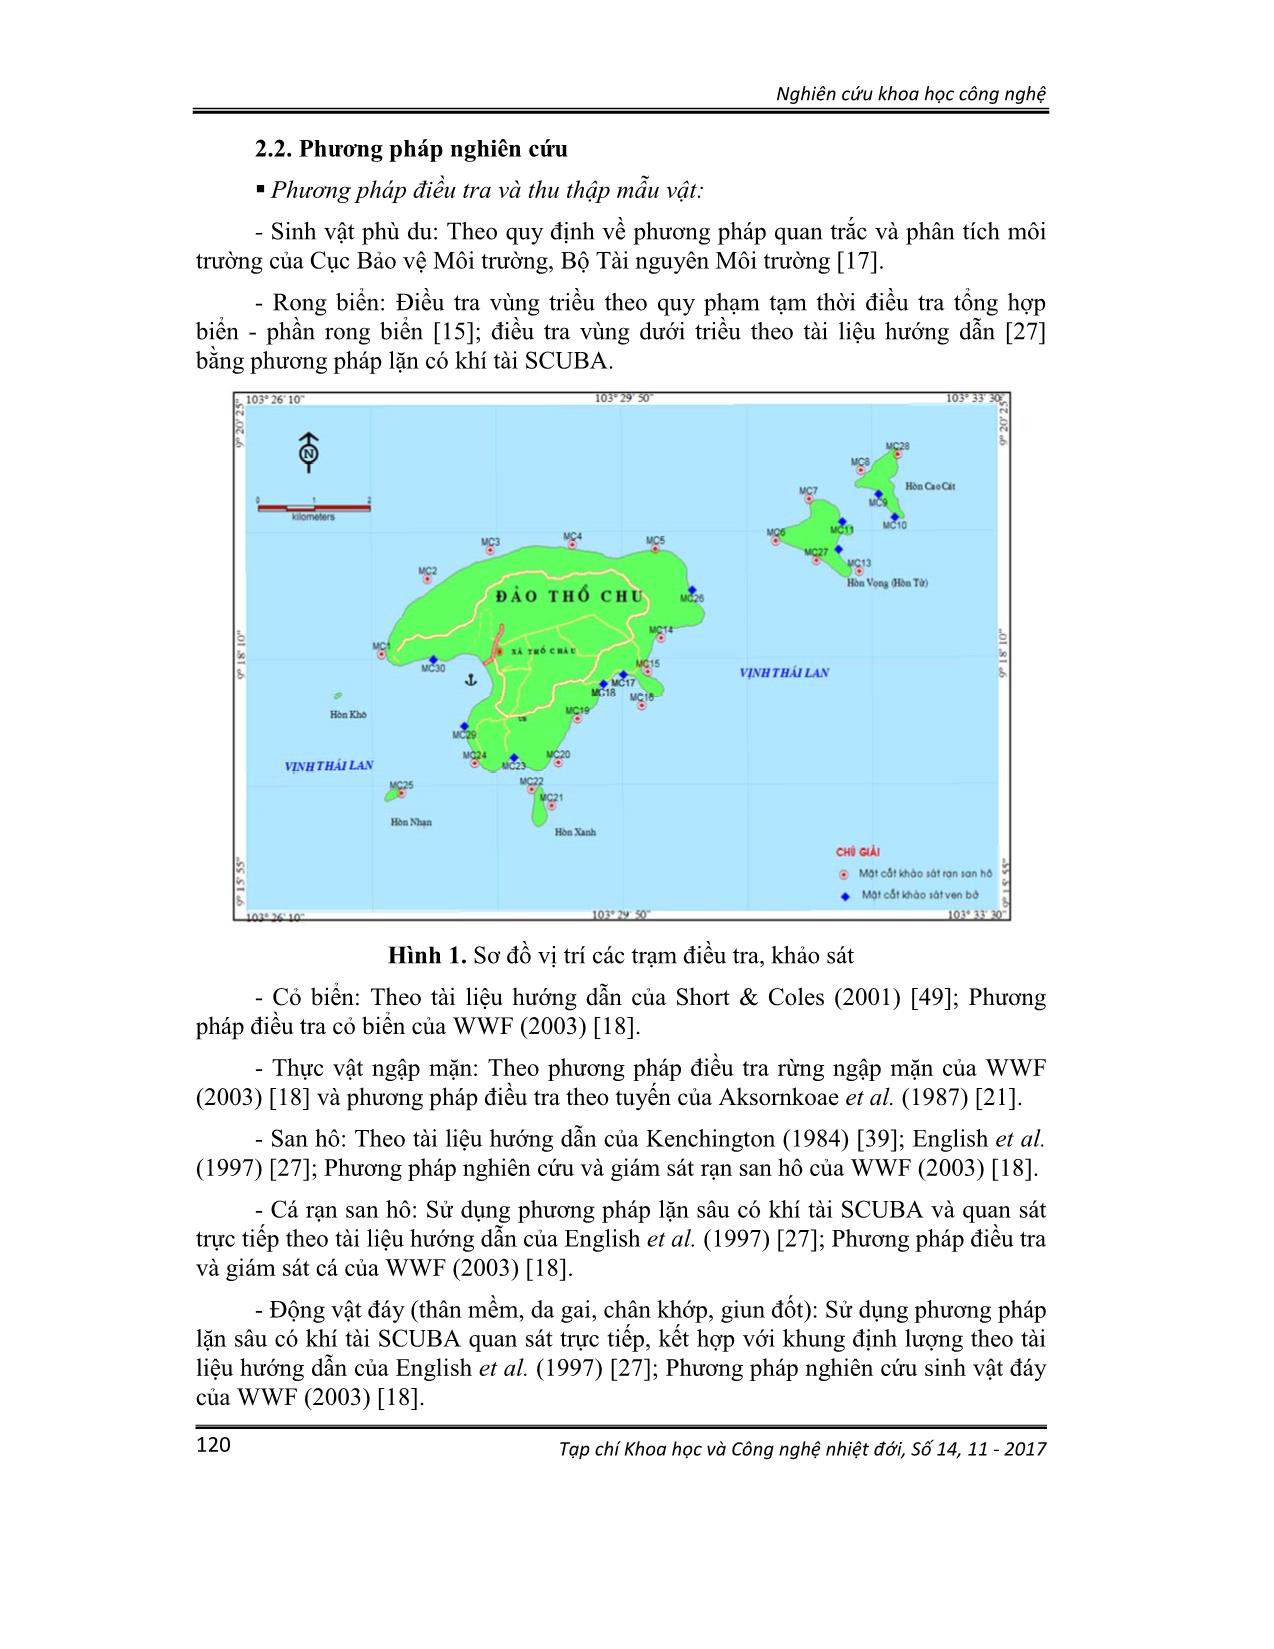 Đa dạng loài sinh vật biển quần đảo Thổ Châu, tỉnh Kiên Giang trang 2